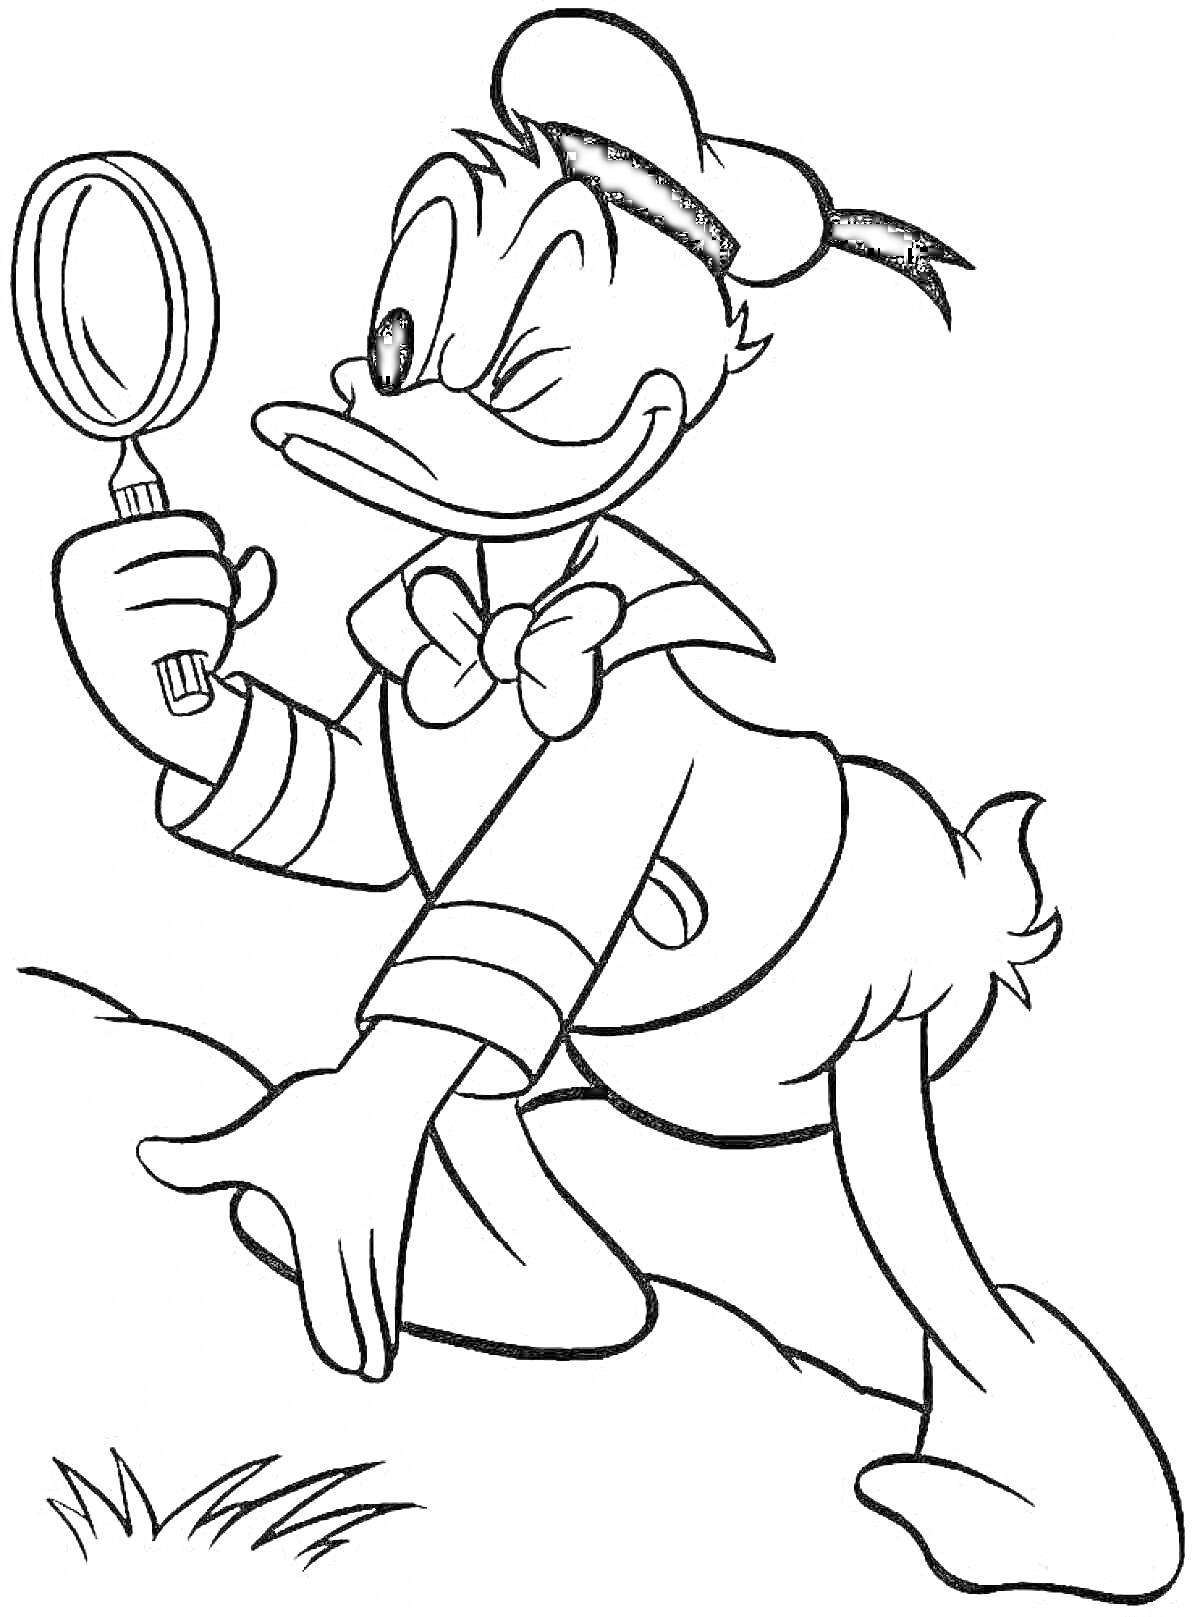 Раскраска Утка в костюме матроса с увеличительным стеклом